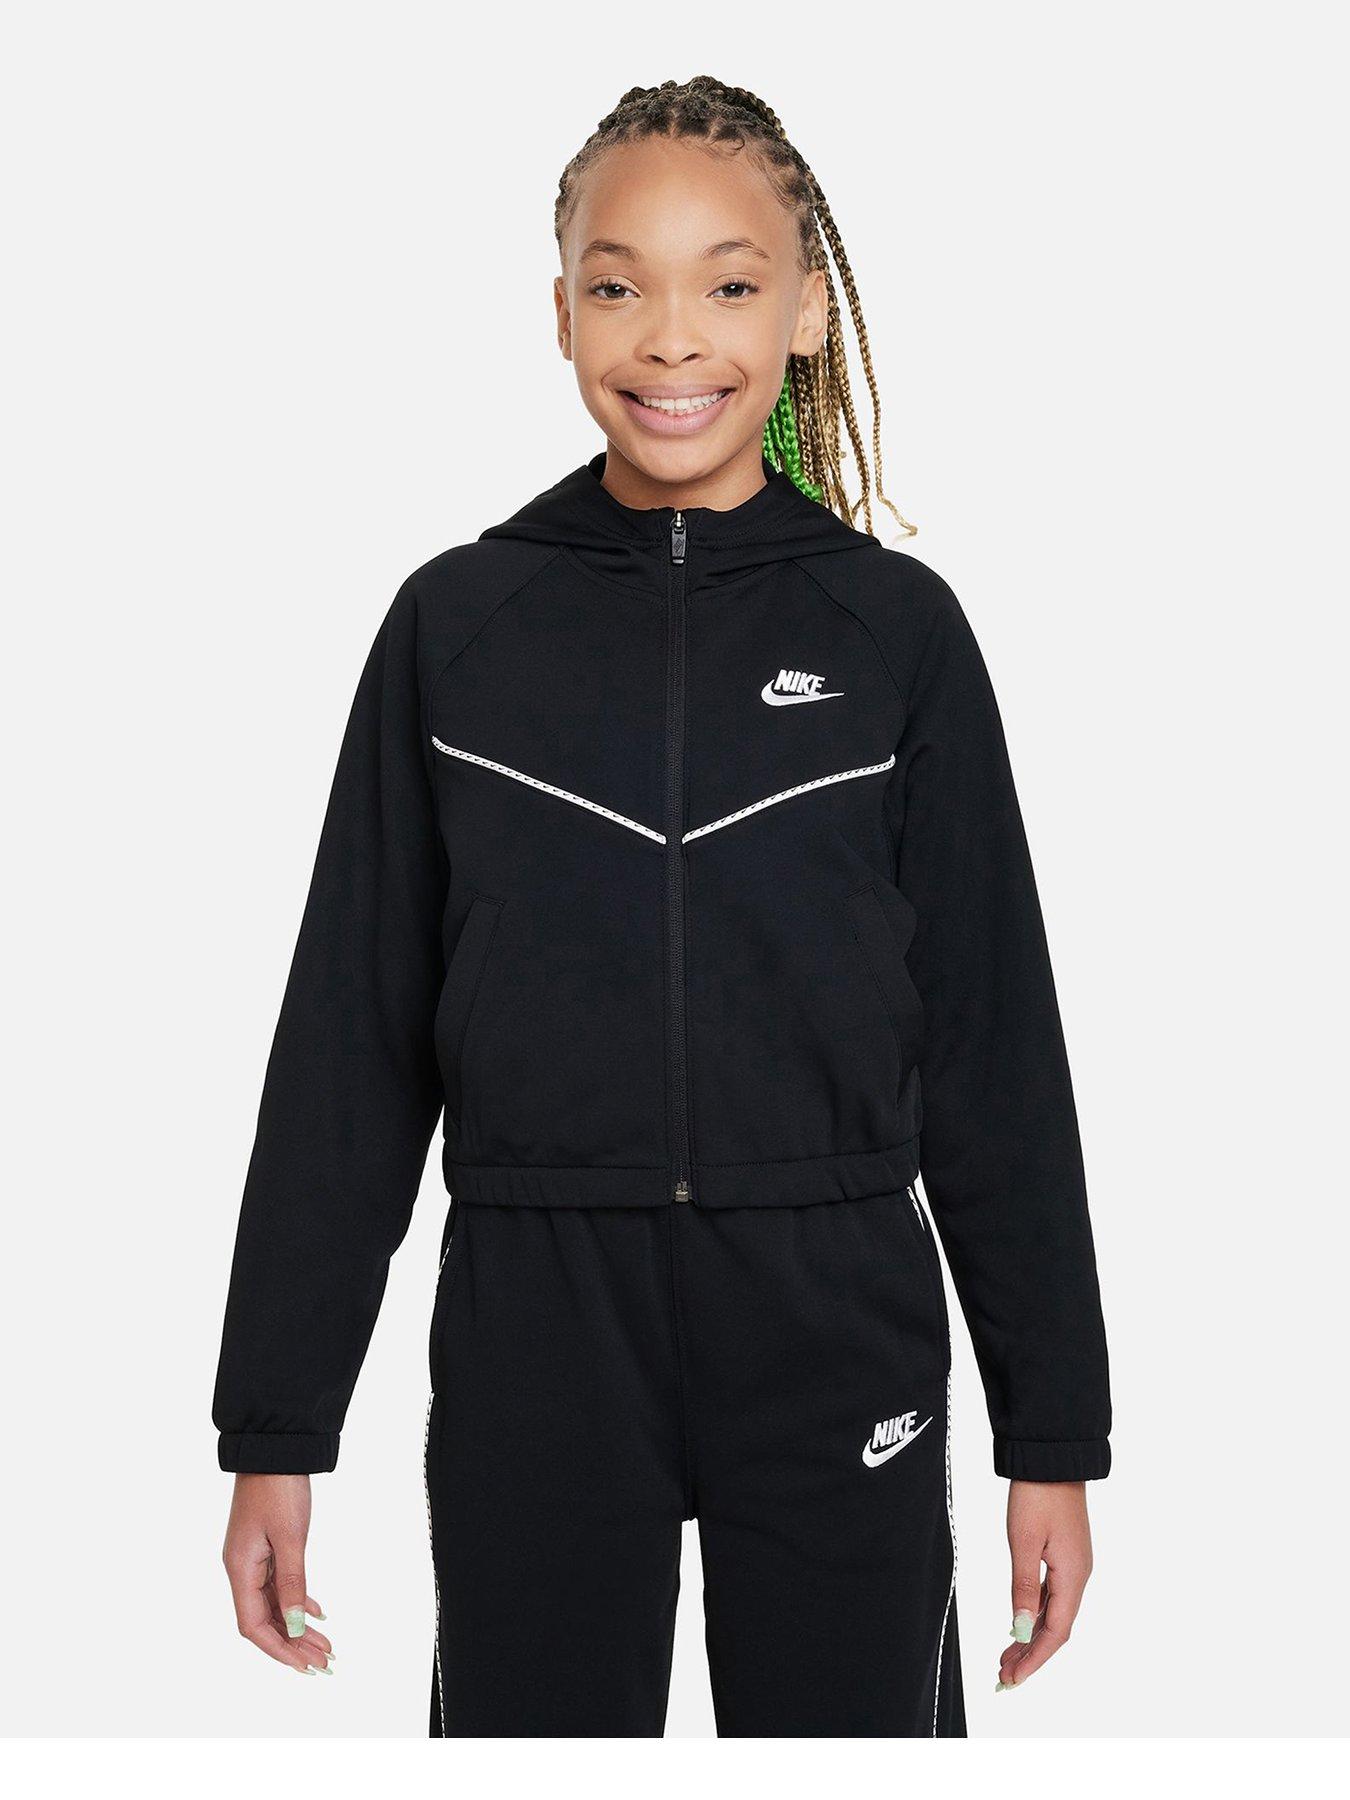 Girls' Nike Sportswear Full Zip Tracksuit Set Top Joggers Blue